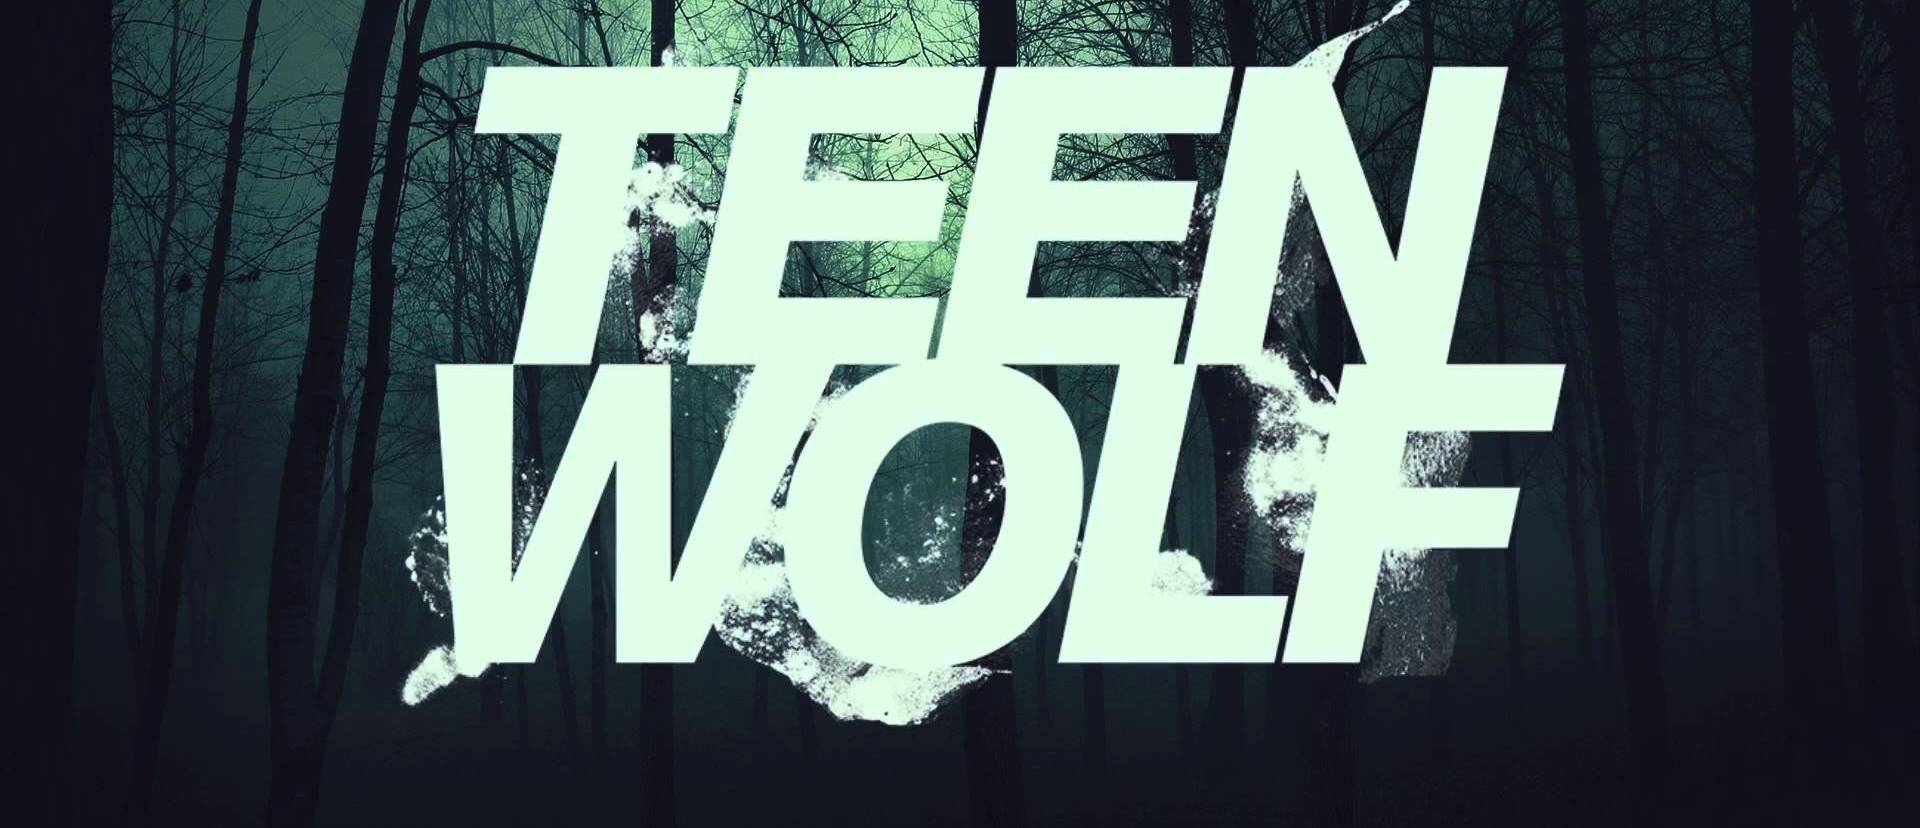 Elstartoltak ismét a farkasok  - Teen Wolf